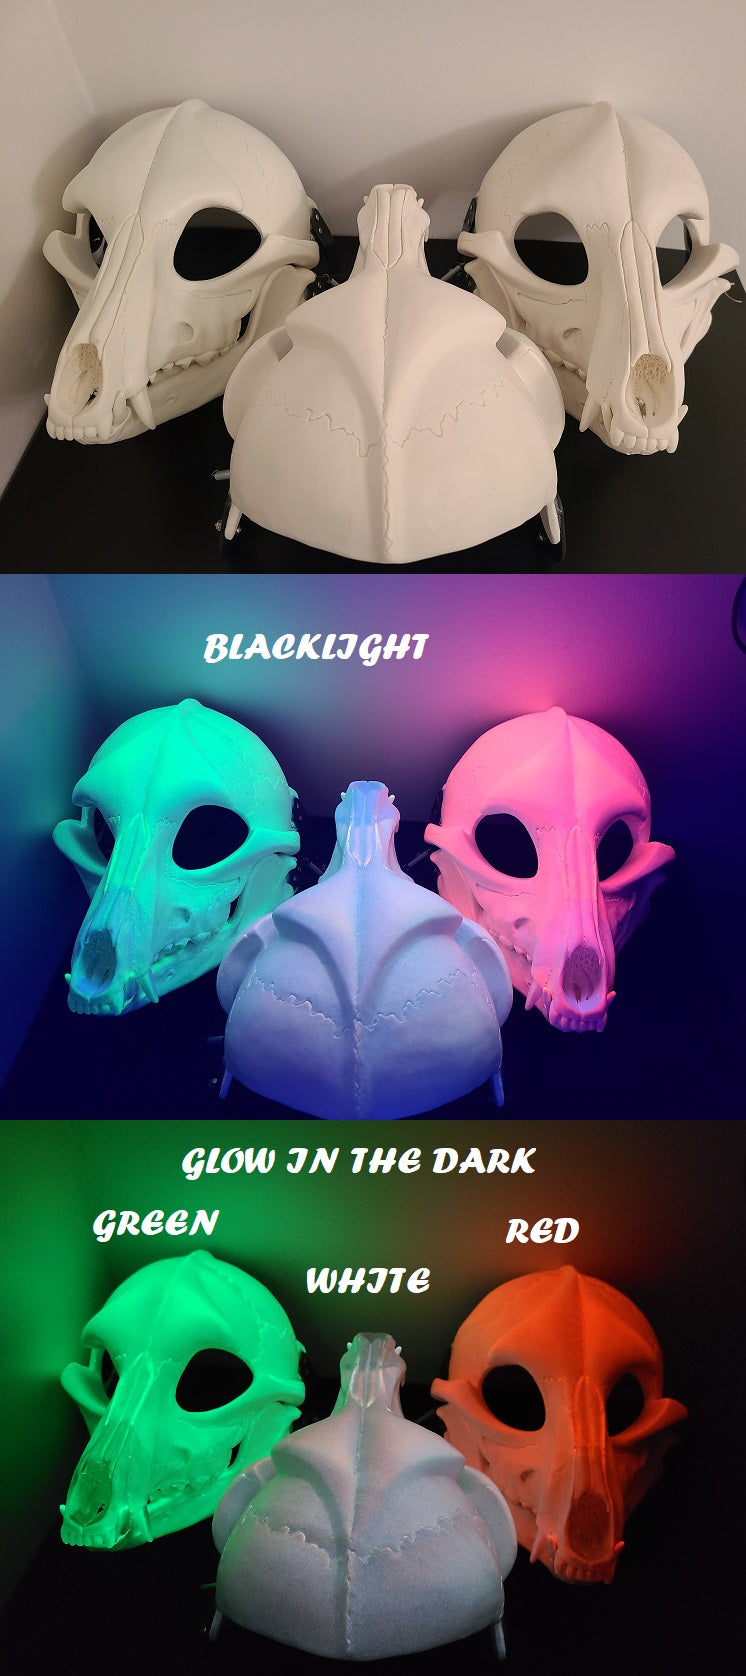 Máscara con bisagras y corte Skeletal K9 que brilla en la oscuridad